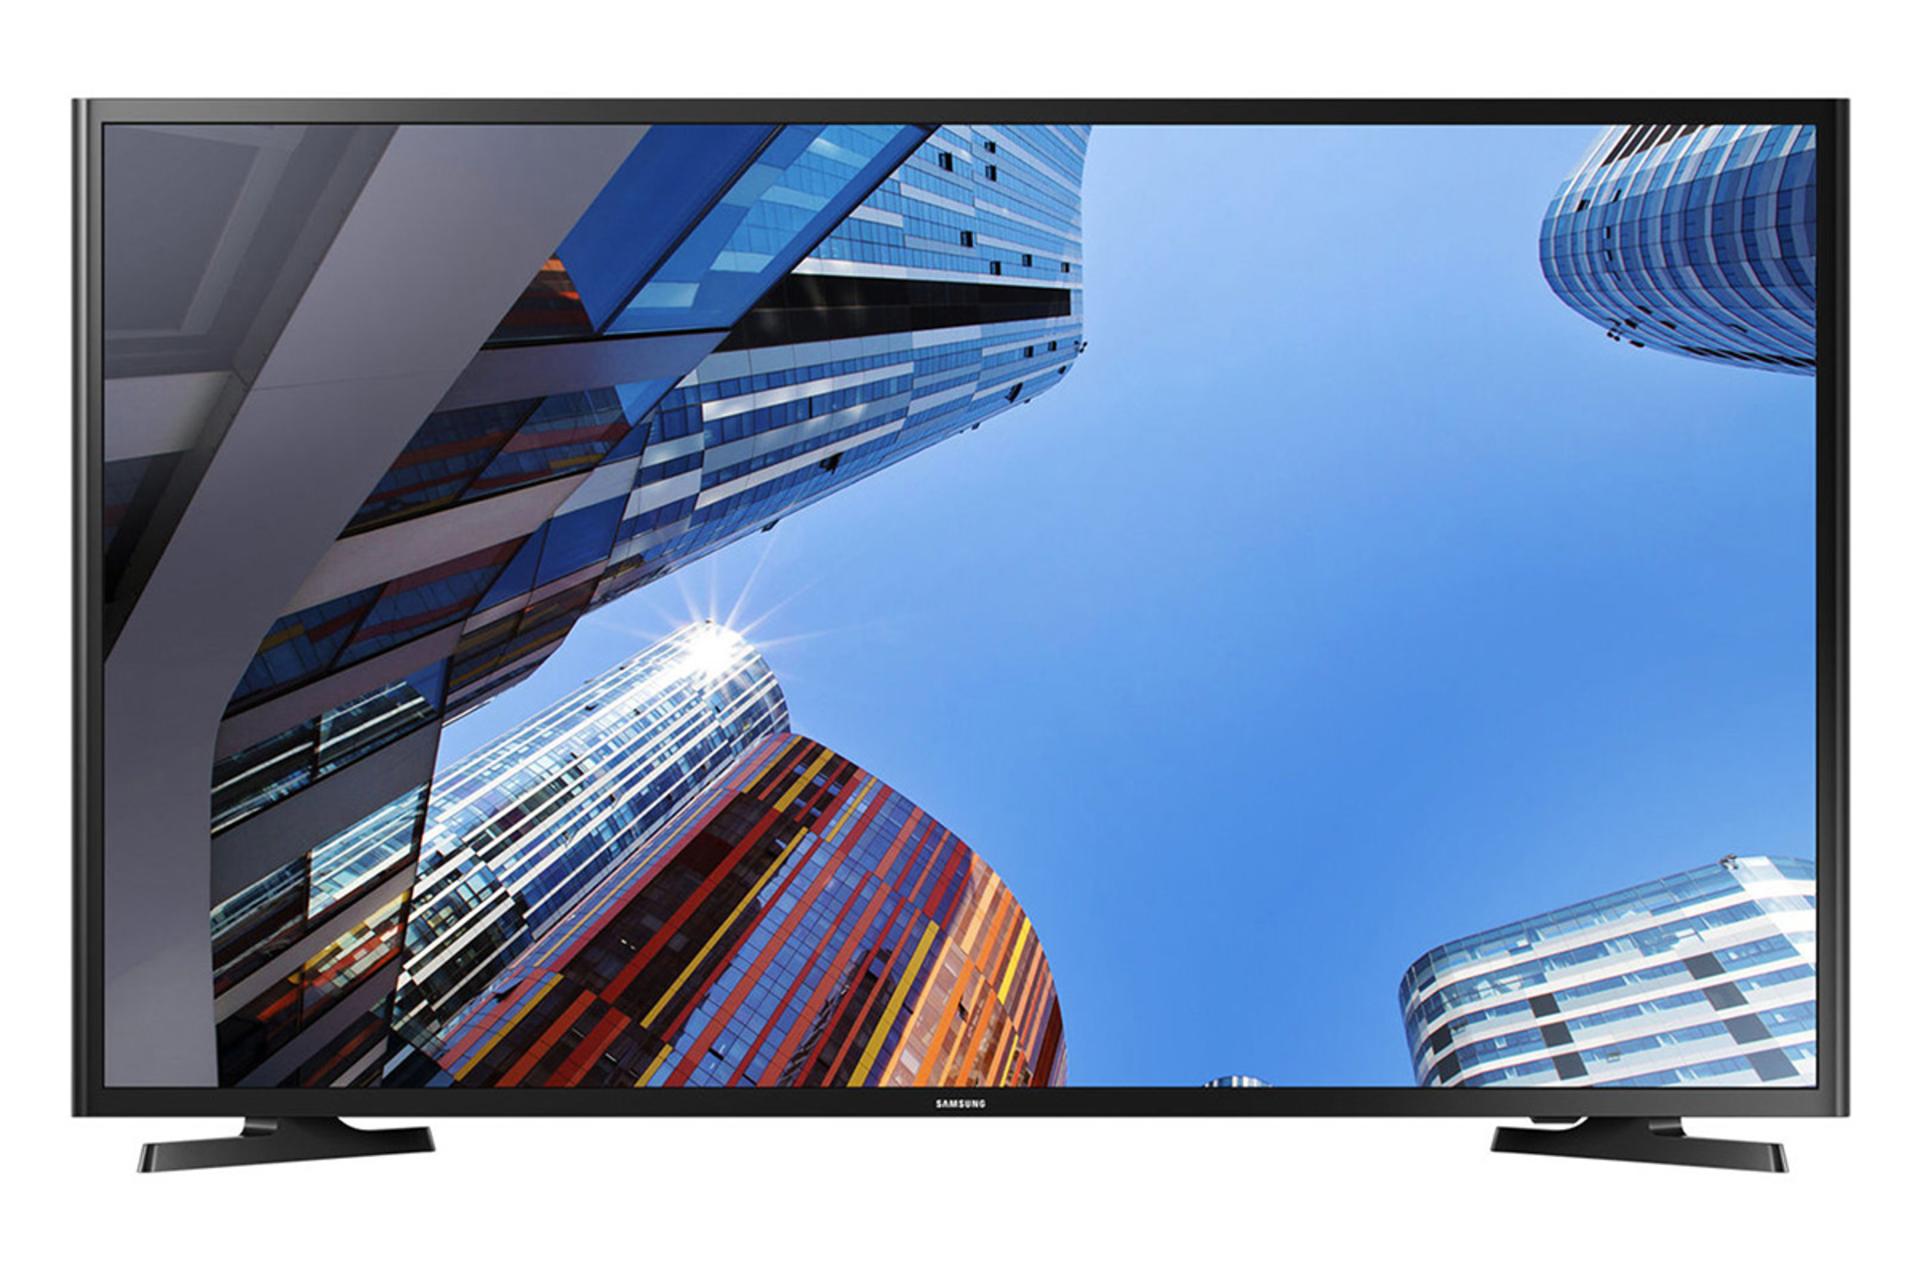 نمای جلو تلویزیون سامسونگ M5000 مدل 49 اینچ با صفحه روشن